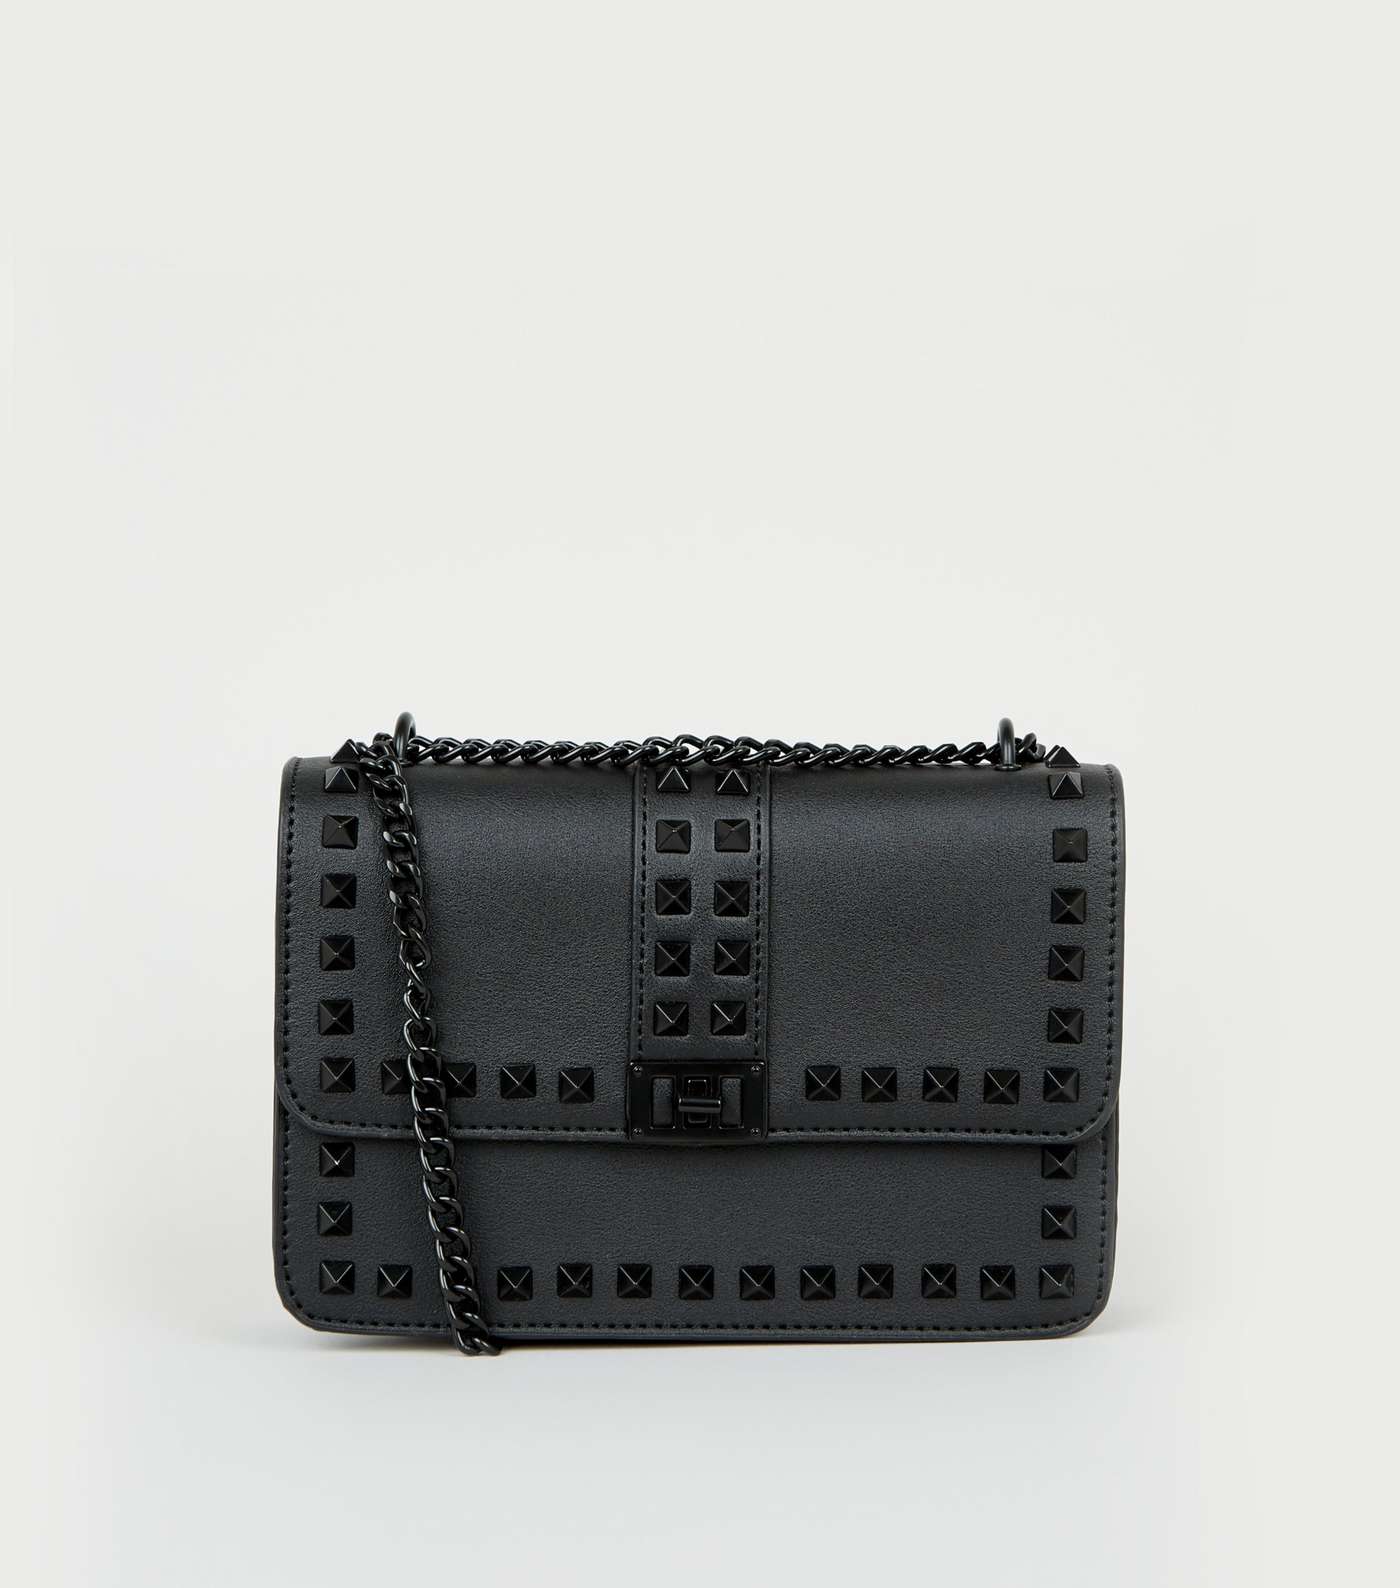 Black Leather-Look Stud Chain Shoulder Bag